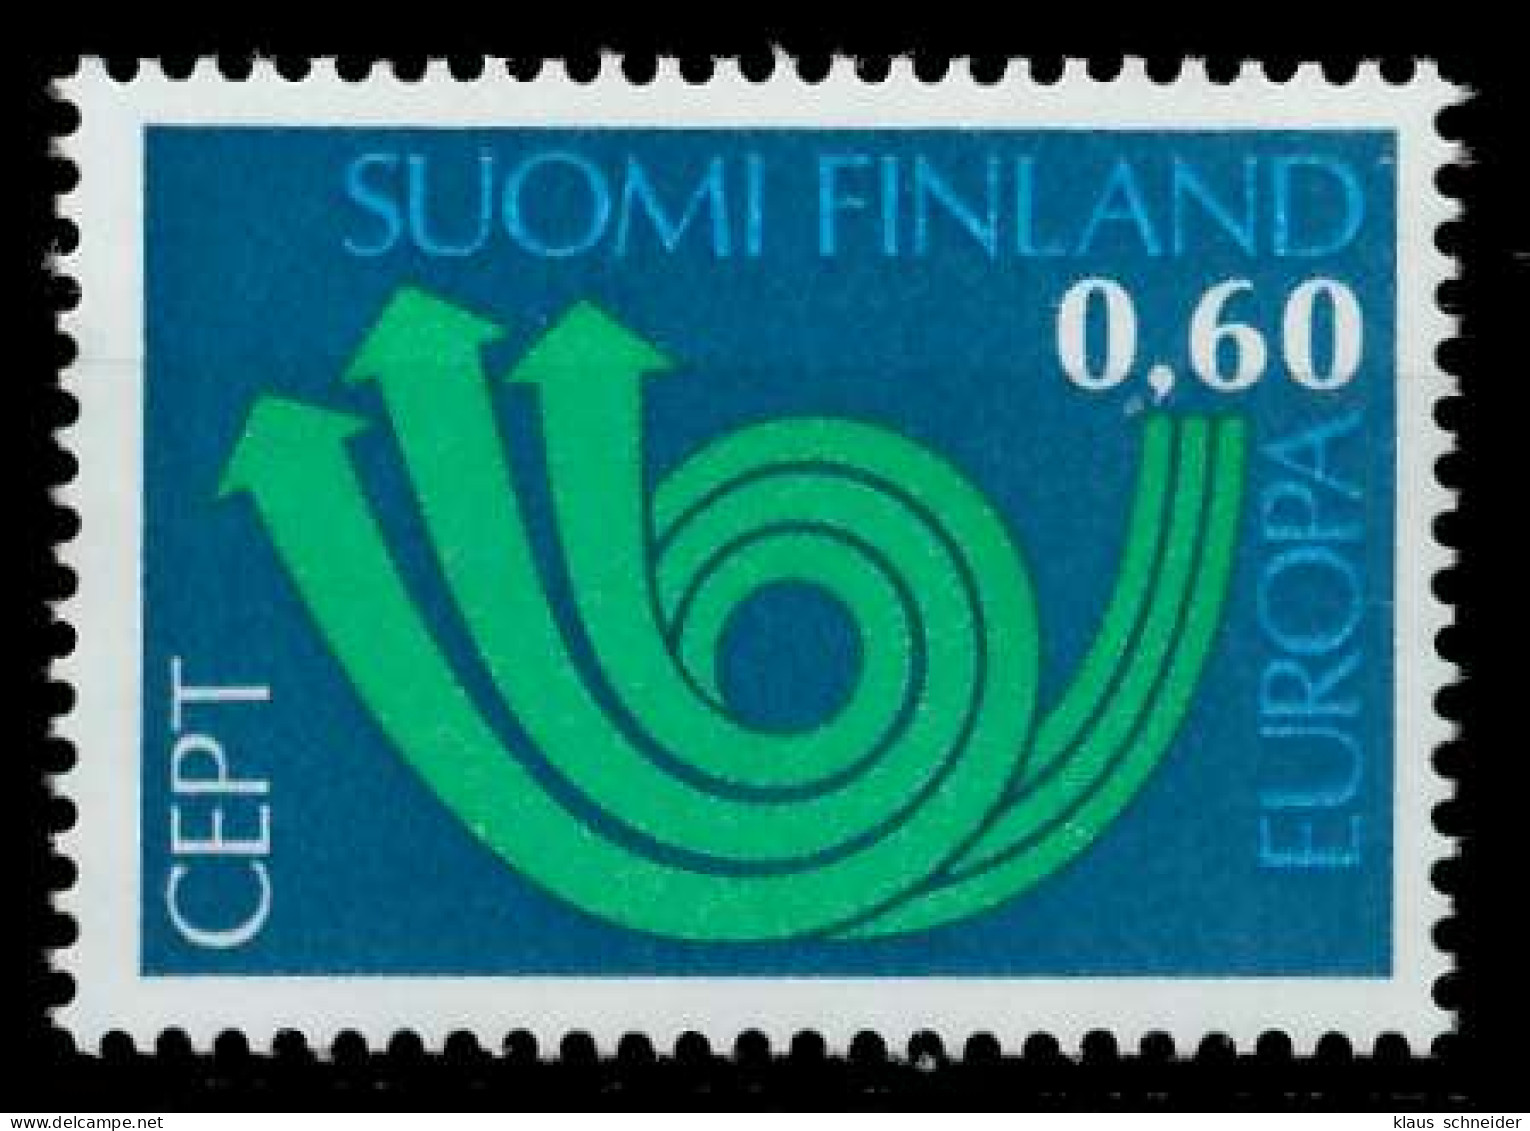 FINNLAND 1973 Nr 722 Postfrisch SAC2D52 - Unused Stamps